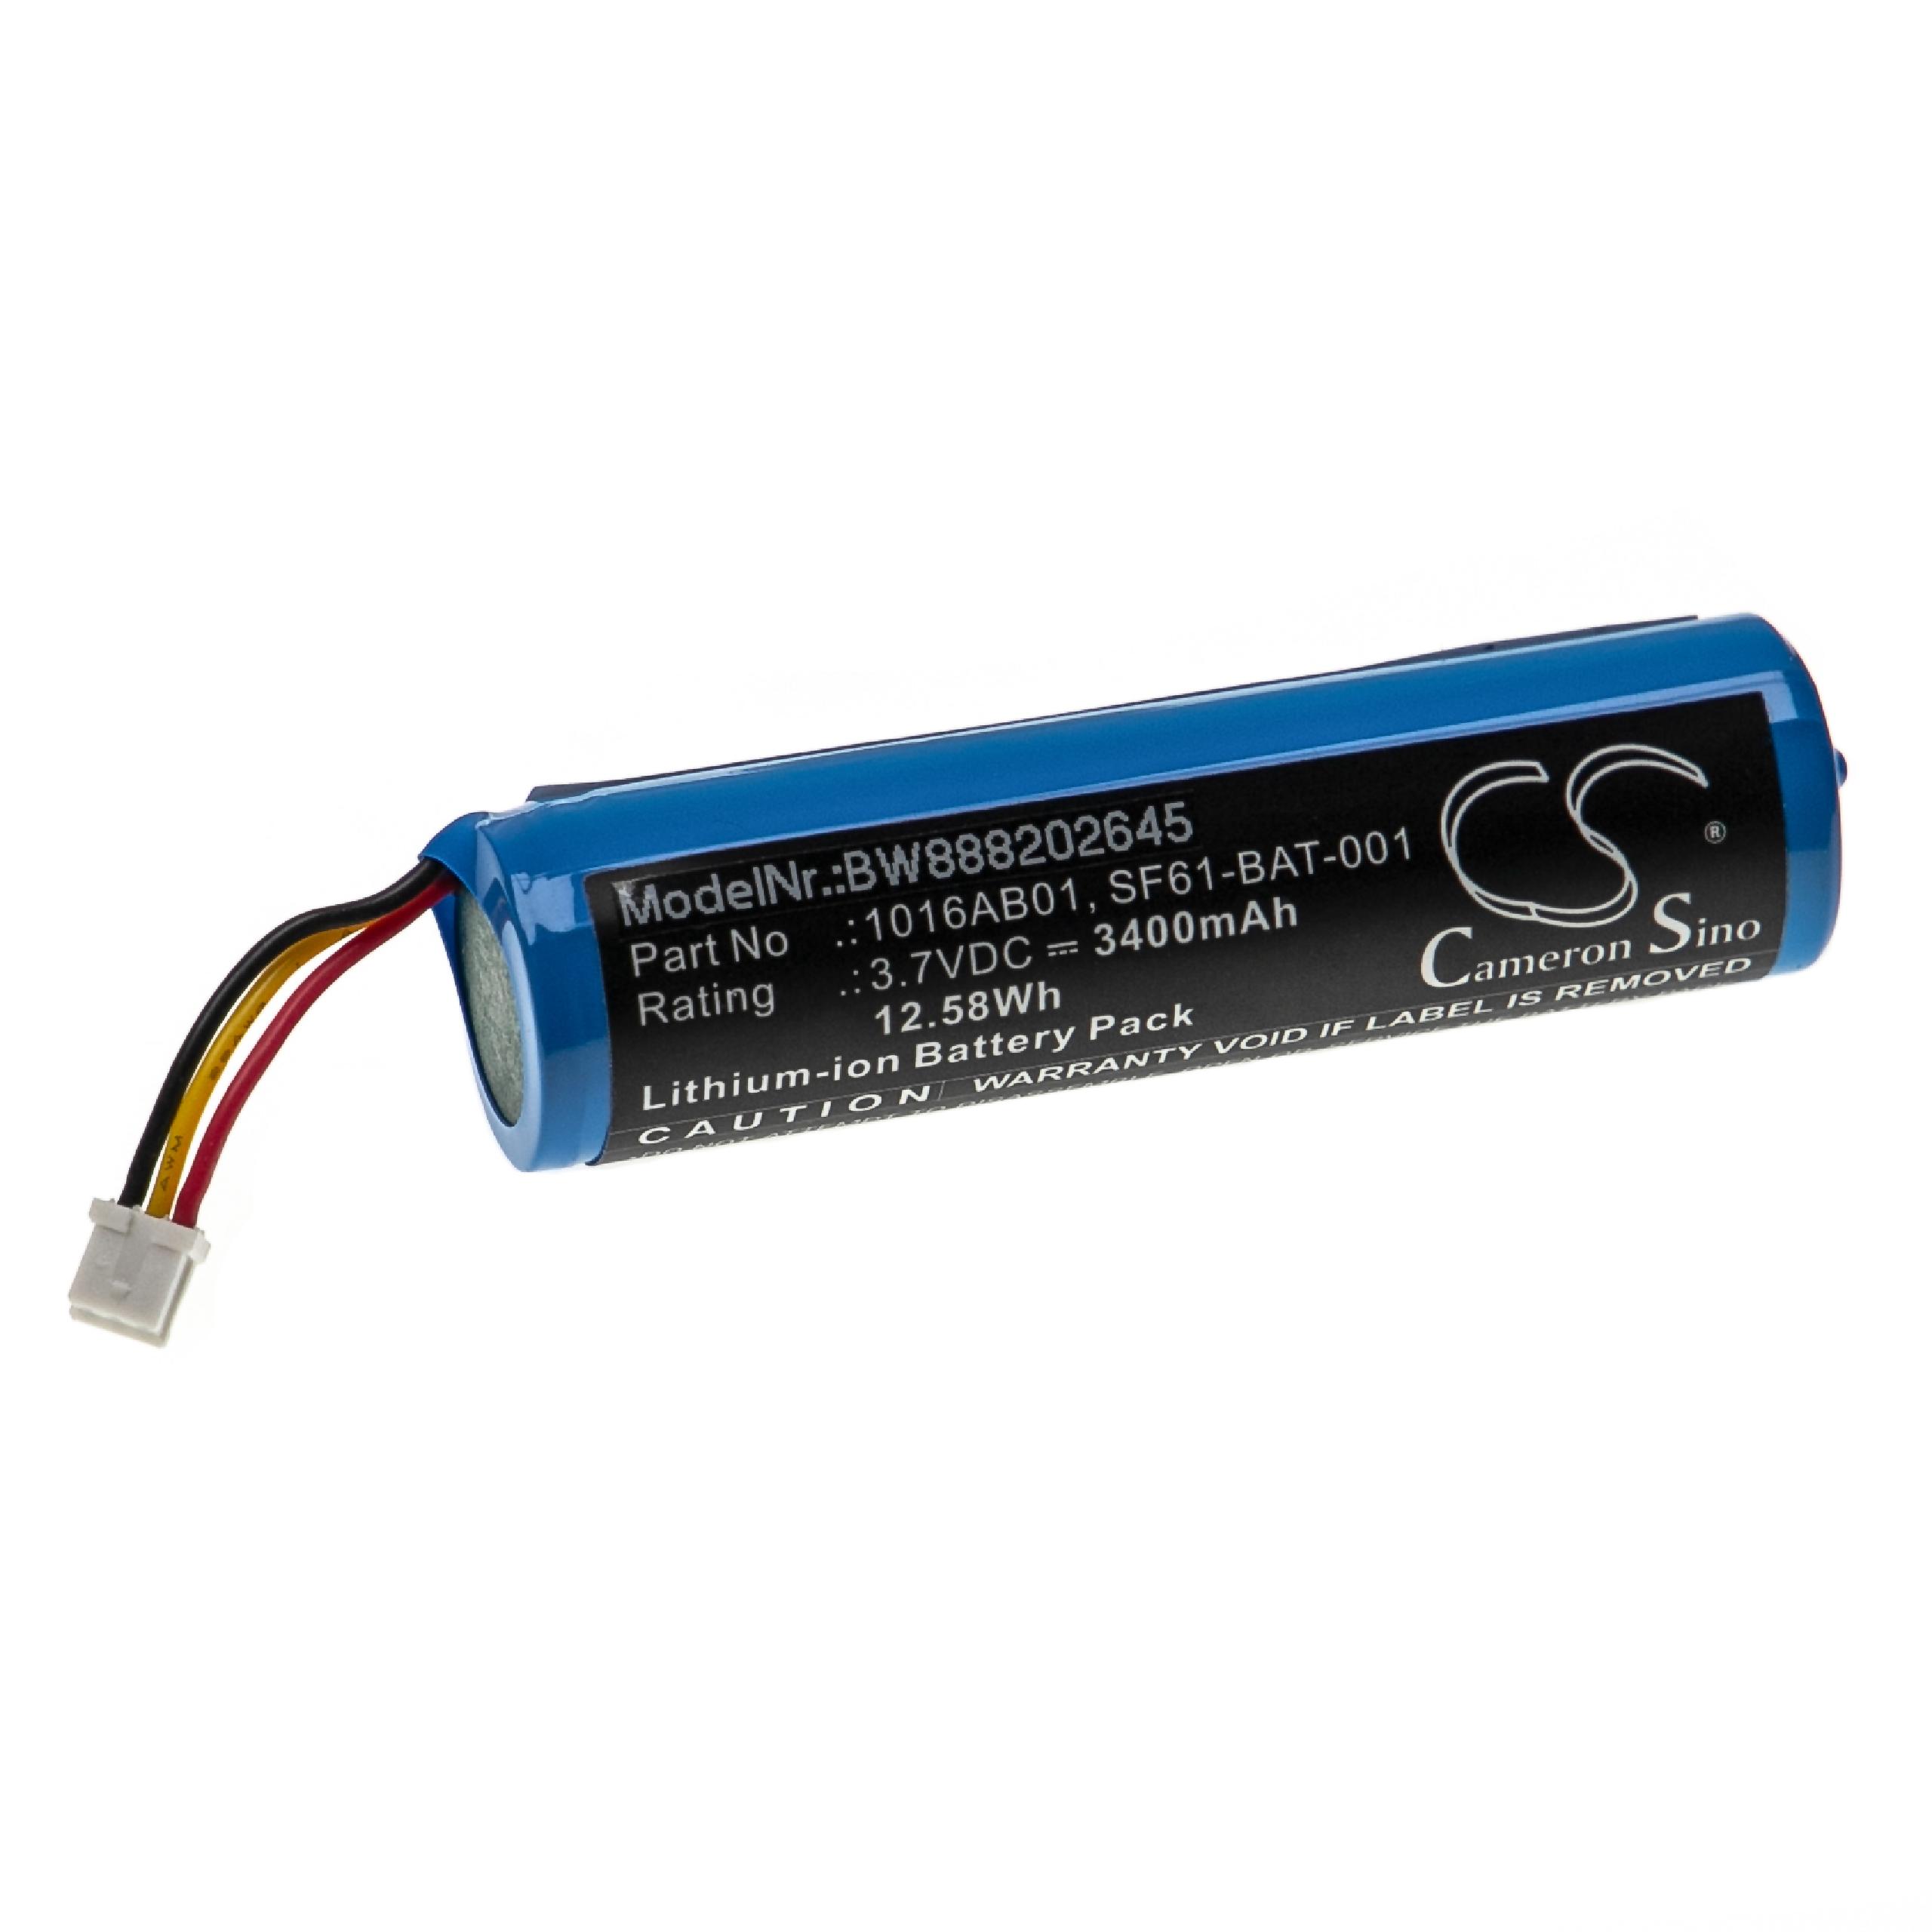 Batterie remplace Intermec 1016AB01, 5711783259886 pour scanner de code-barre - 3400mAh 3,7V Li-ion